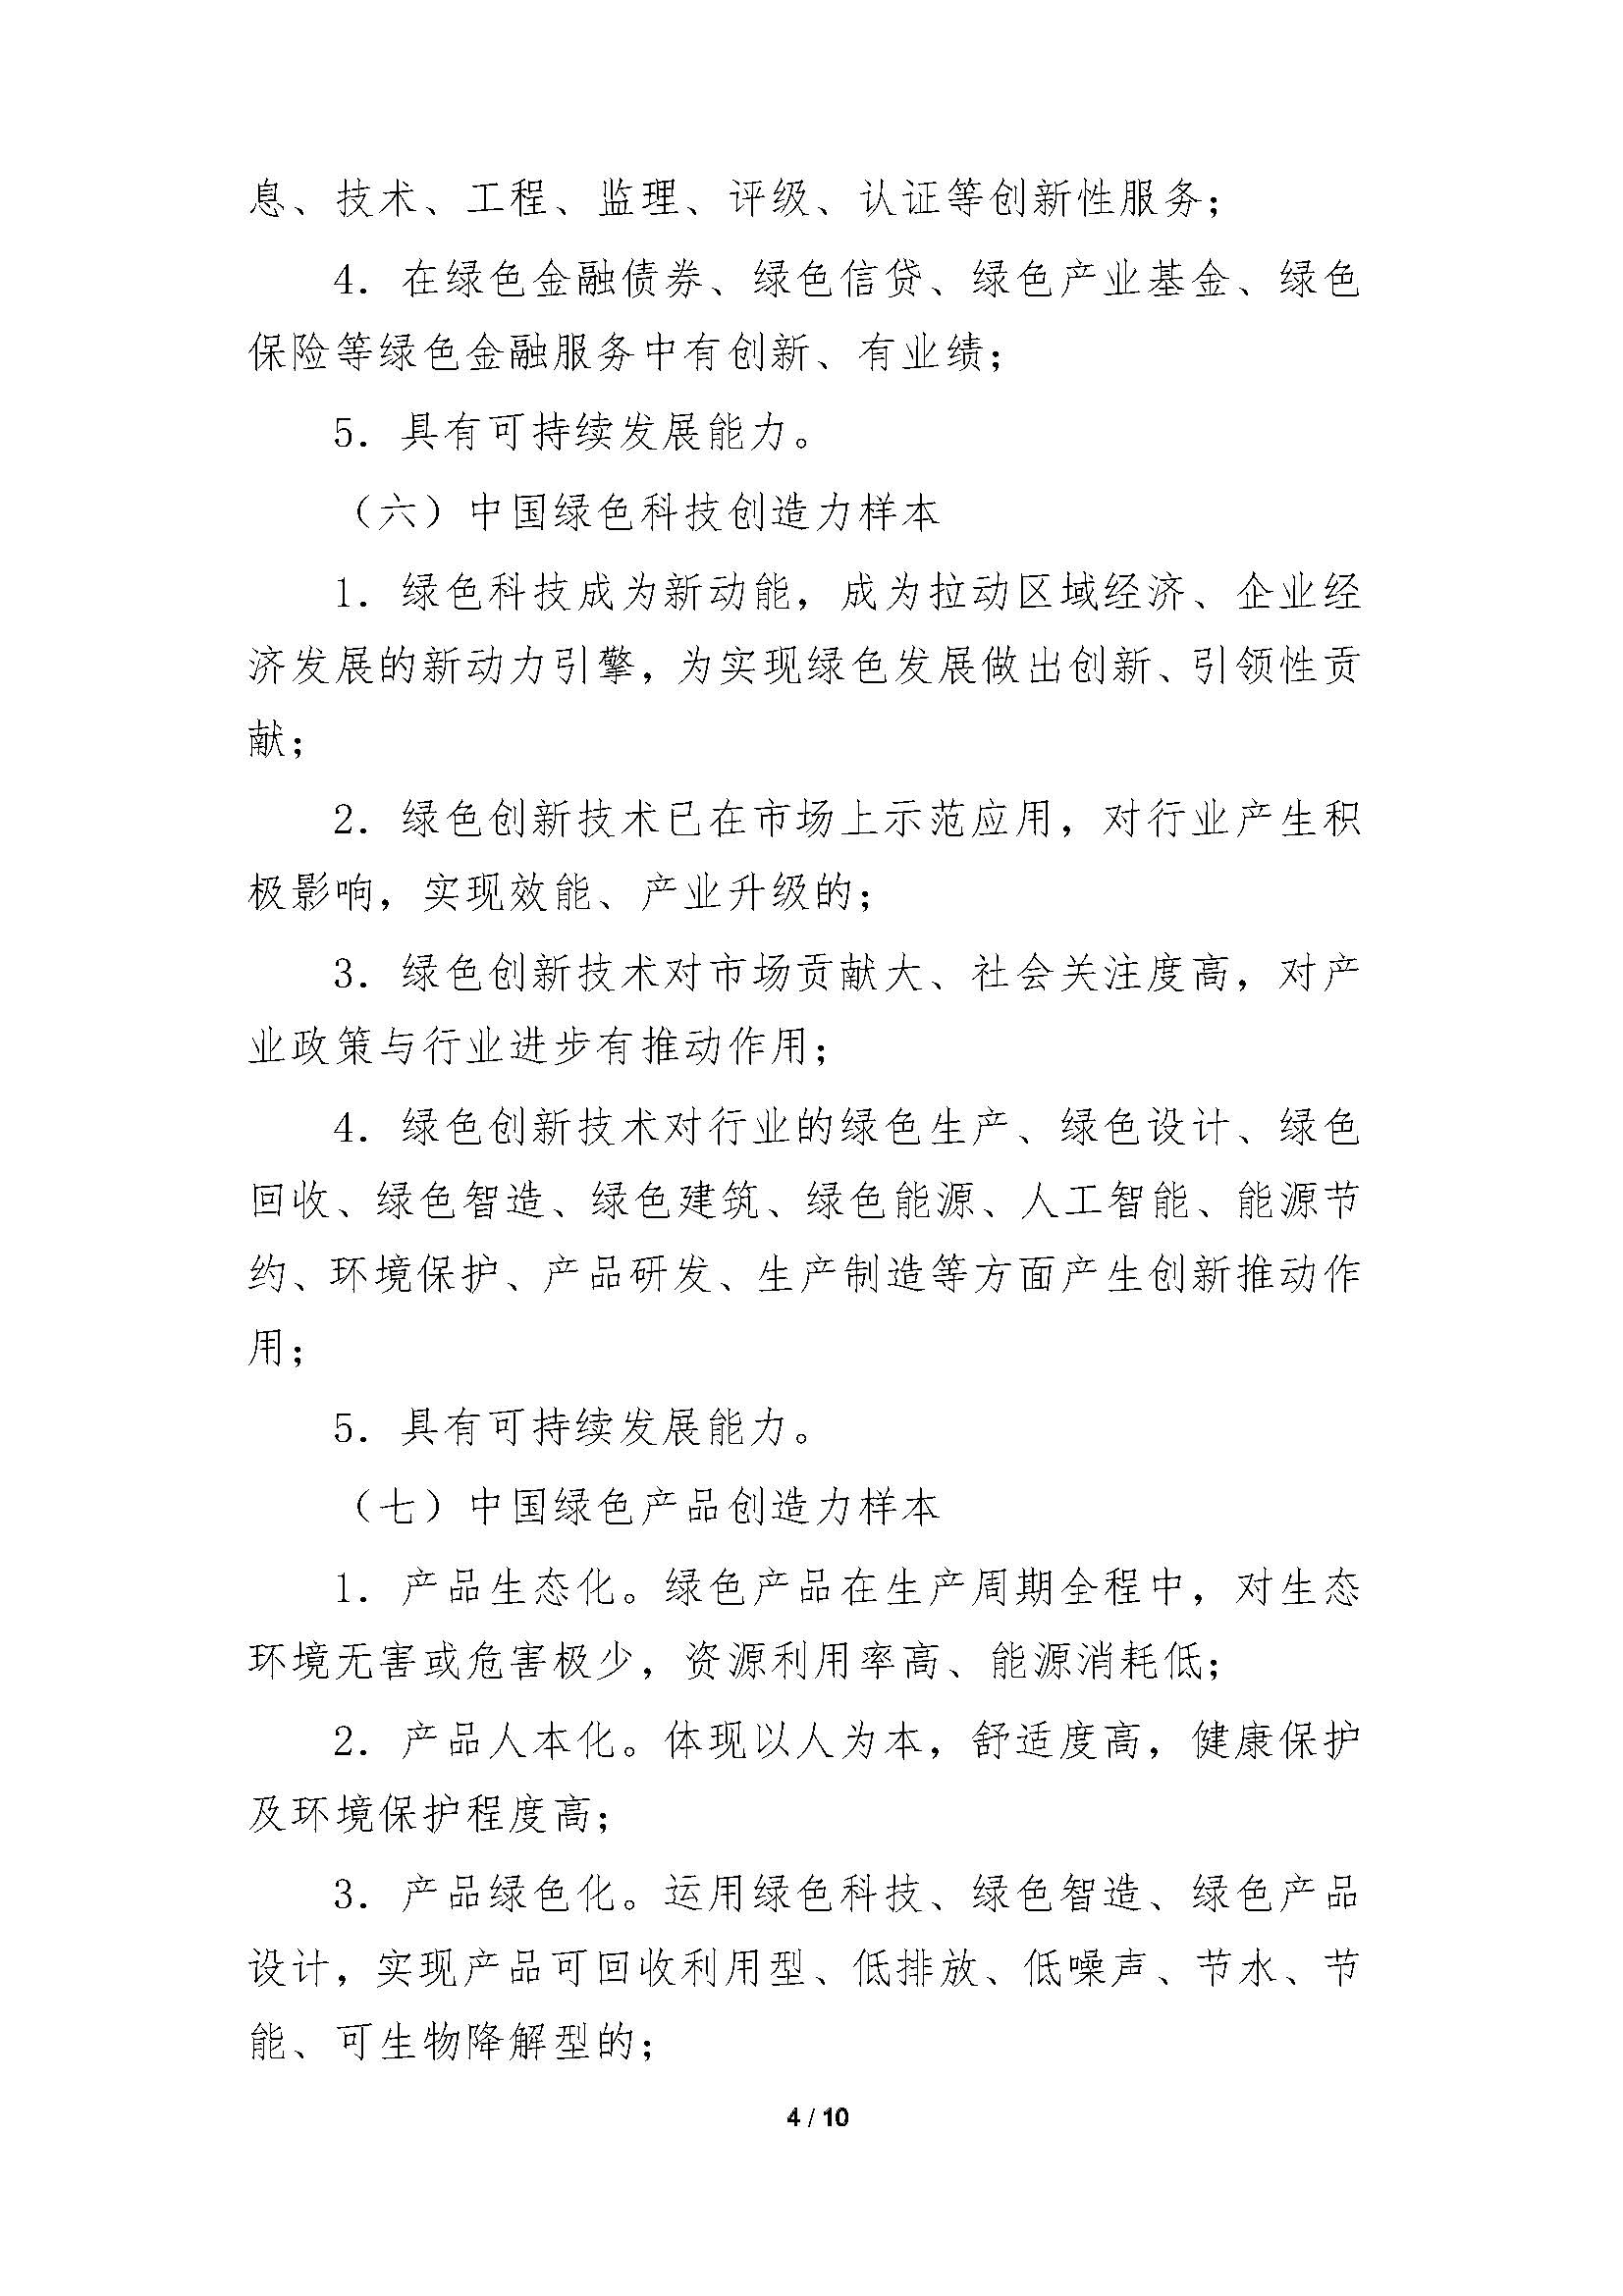 中国绿色创造力样本”的通知_页面_04.jpg